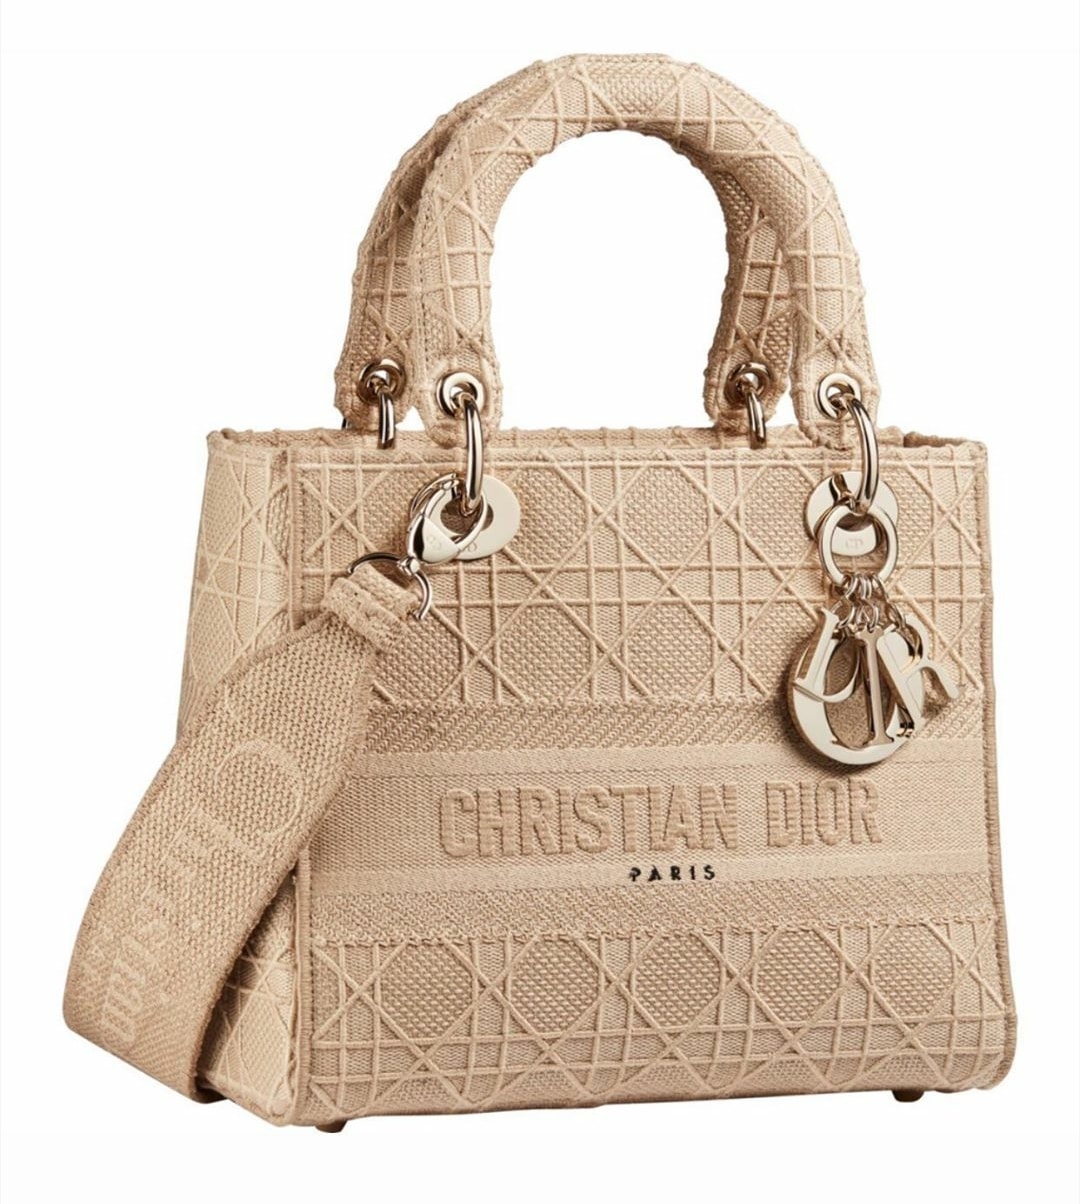  Christian Dior Bags For Women Original